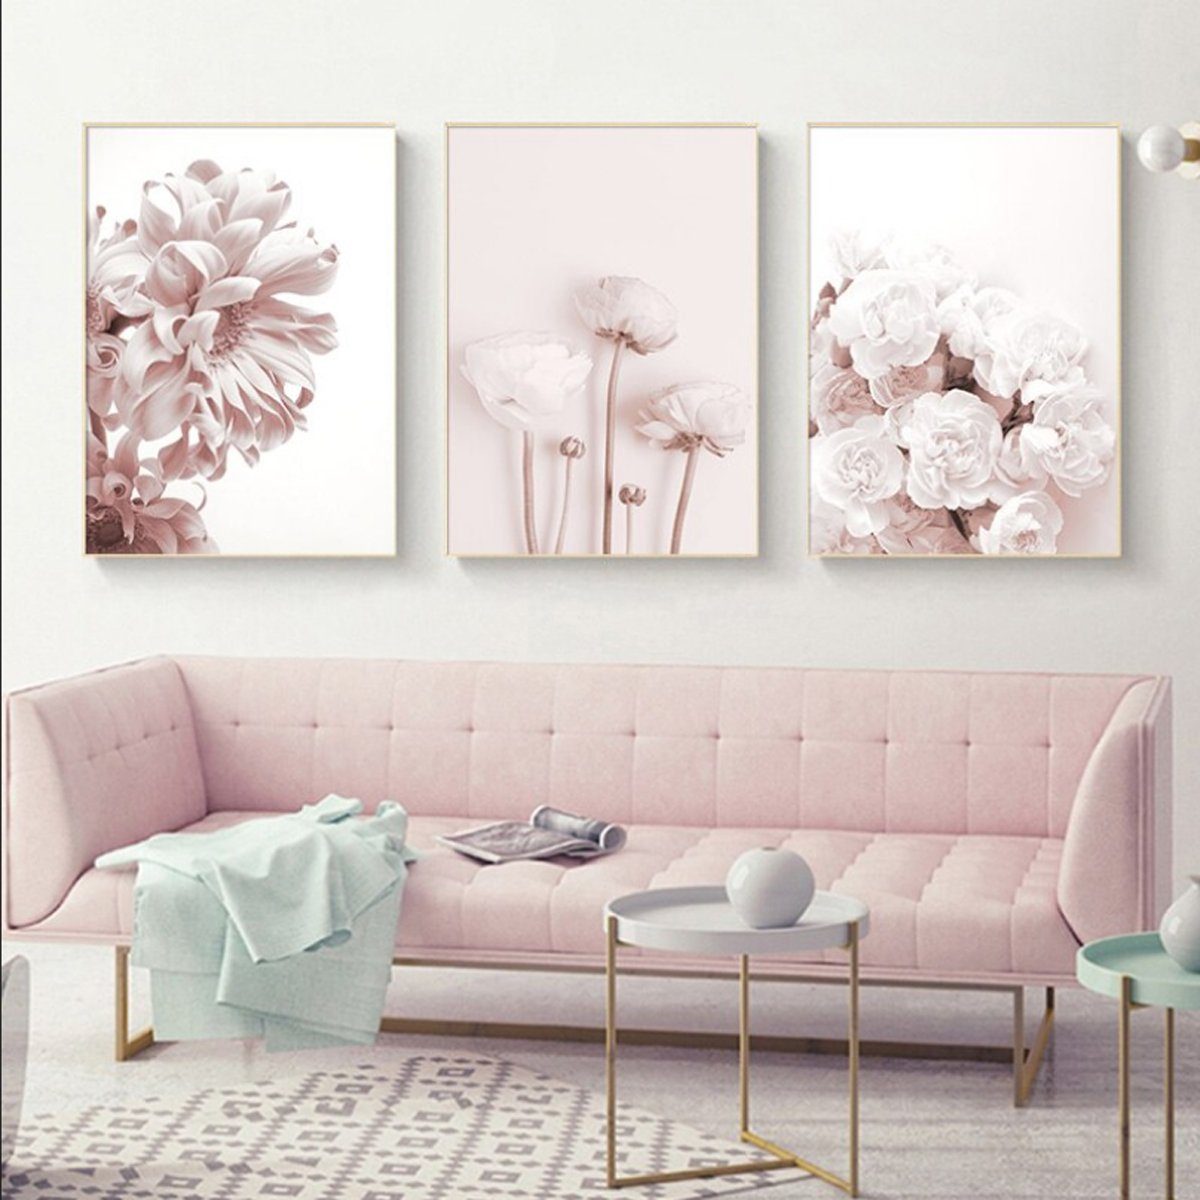 TPFLiving Kunstdruck (OHNE RAHMEN) Poster - Leinwand - Wandbild, Rosa Blumen und Blüten - Wanddeko Wohnzimmer - (13 verschiedene Größen zur Auswahl - Auch im günstigen 3-er Set), Farben: Pink und Weiß - Größe: 21x30cm